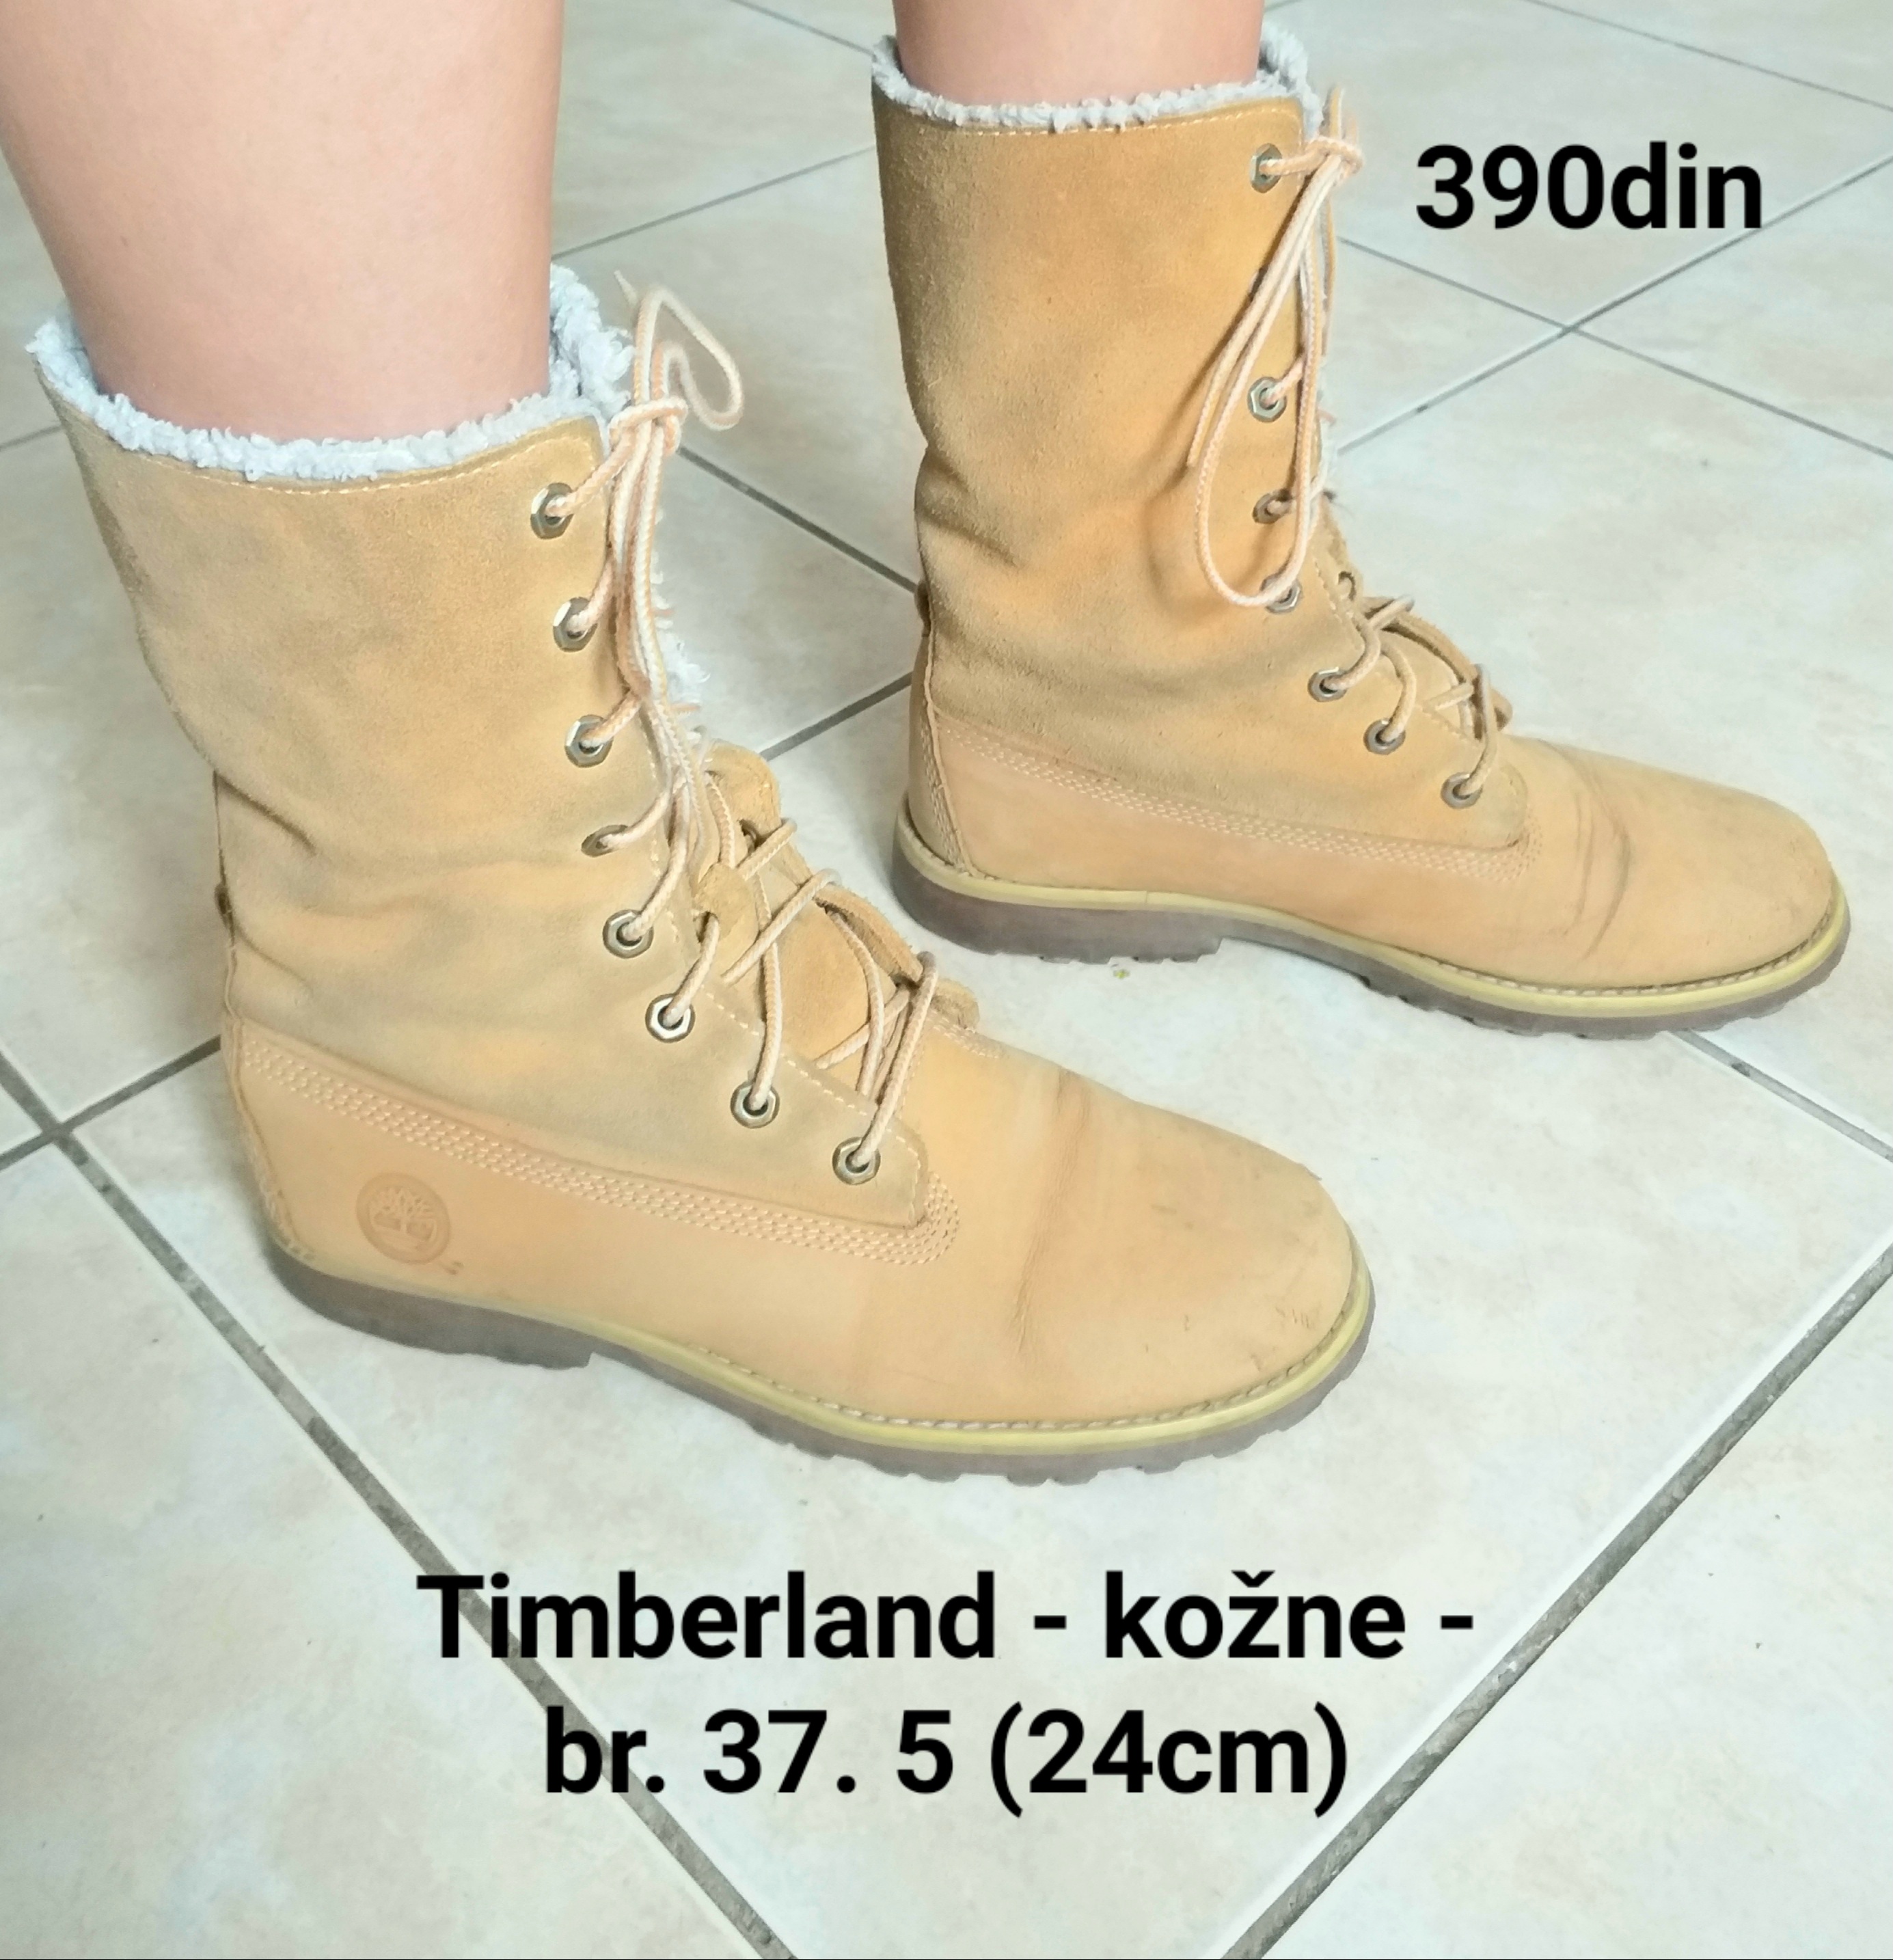 Timberland kožne cipele br. 37.5